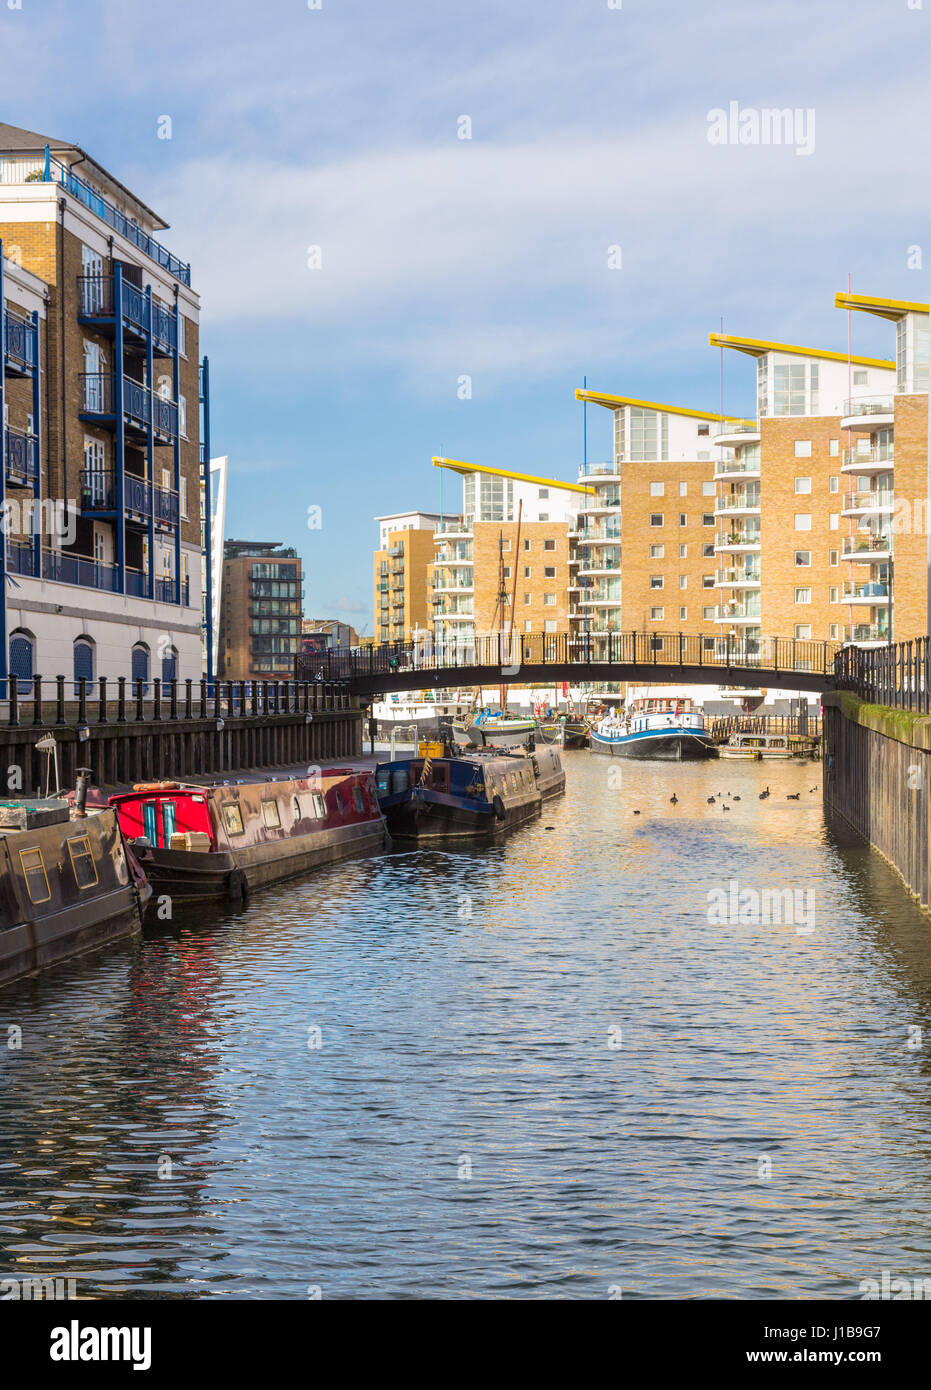 Cortar Limehouse buscando los edificios de apartamentos, en la cuenca de Limehouse Marina en Docklands con casas flotantes, Londres, Inglaterra Foto de stock